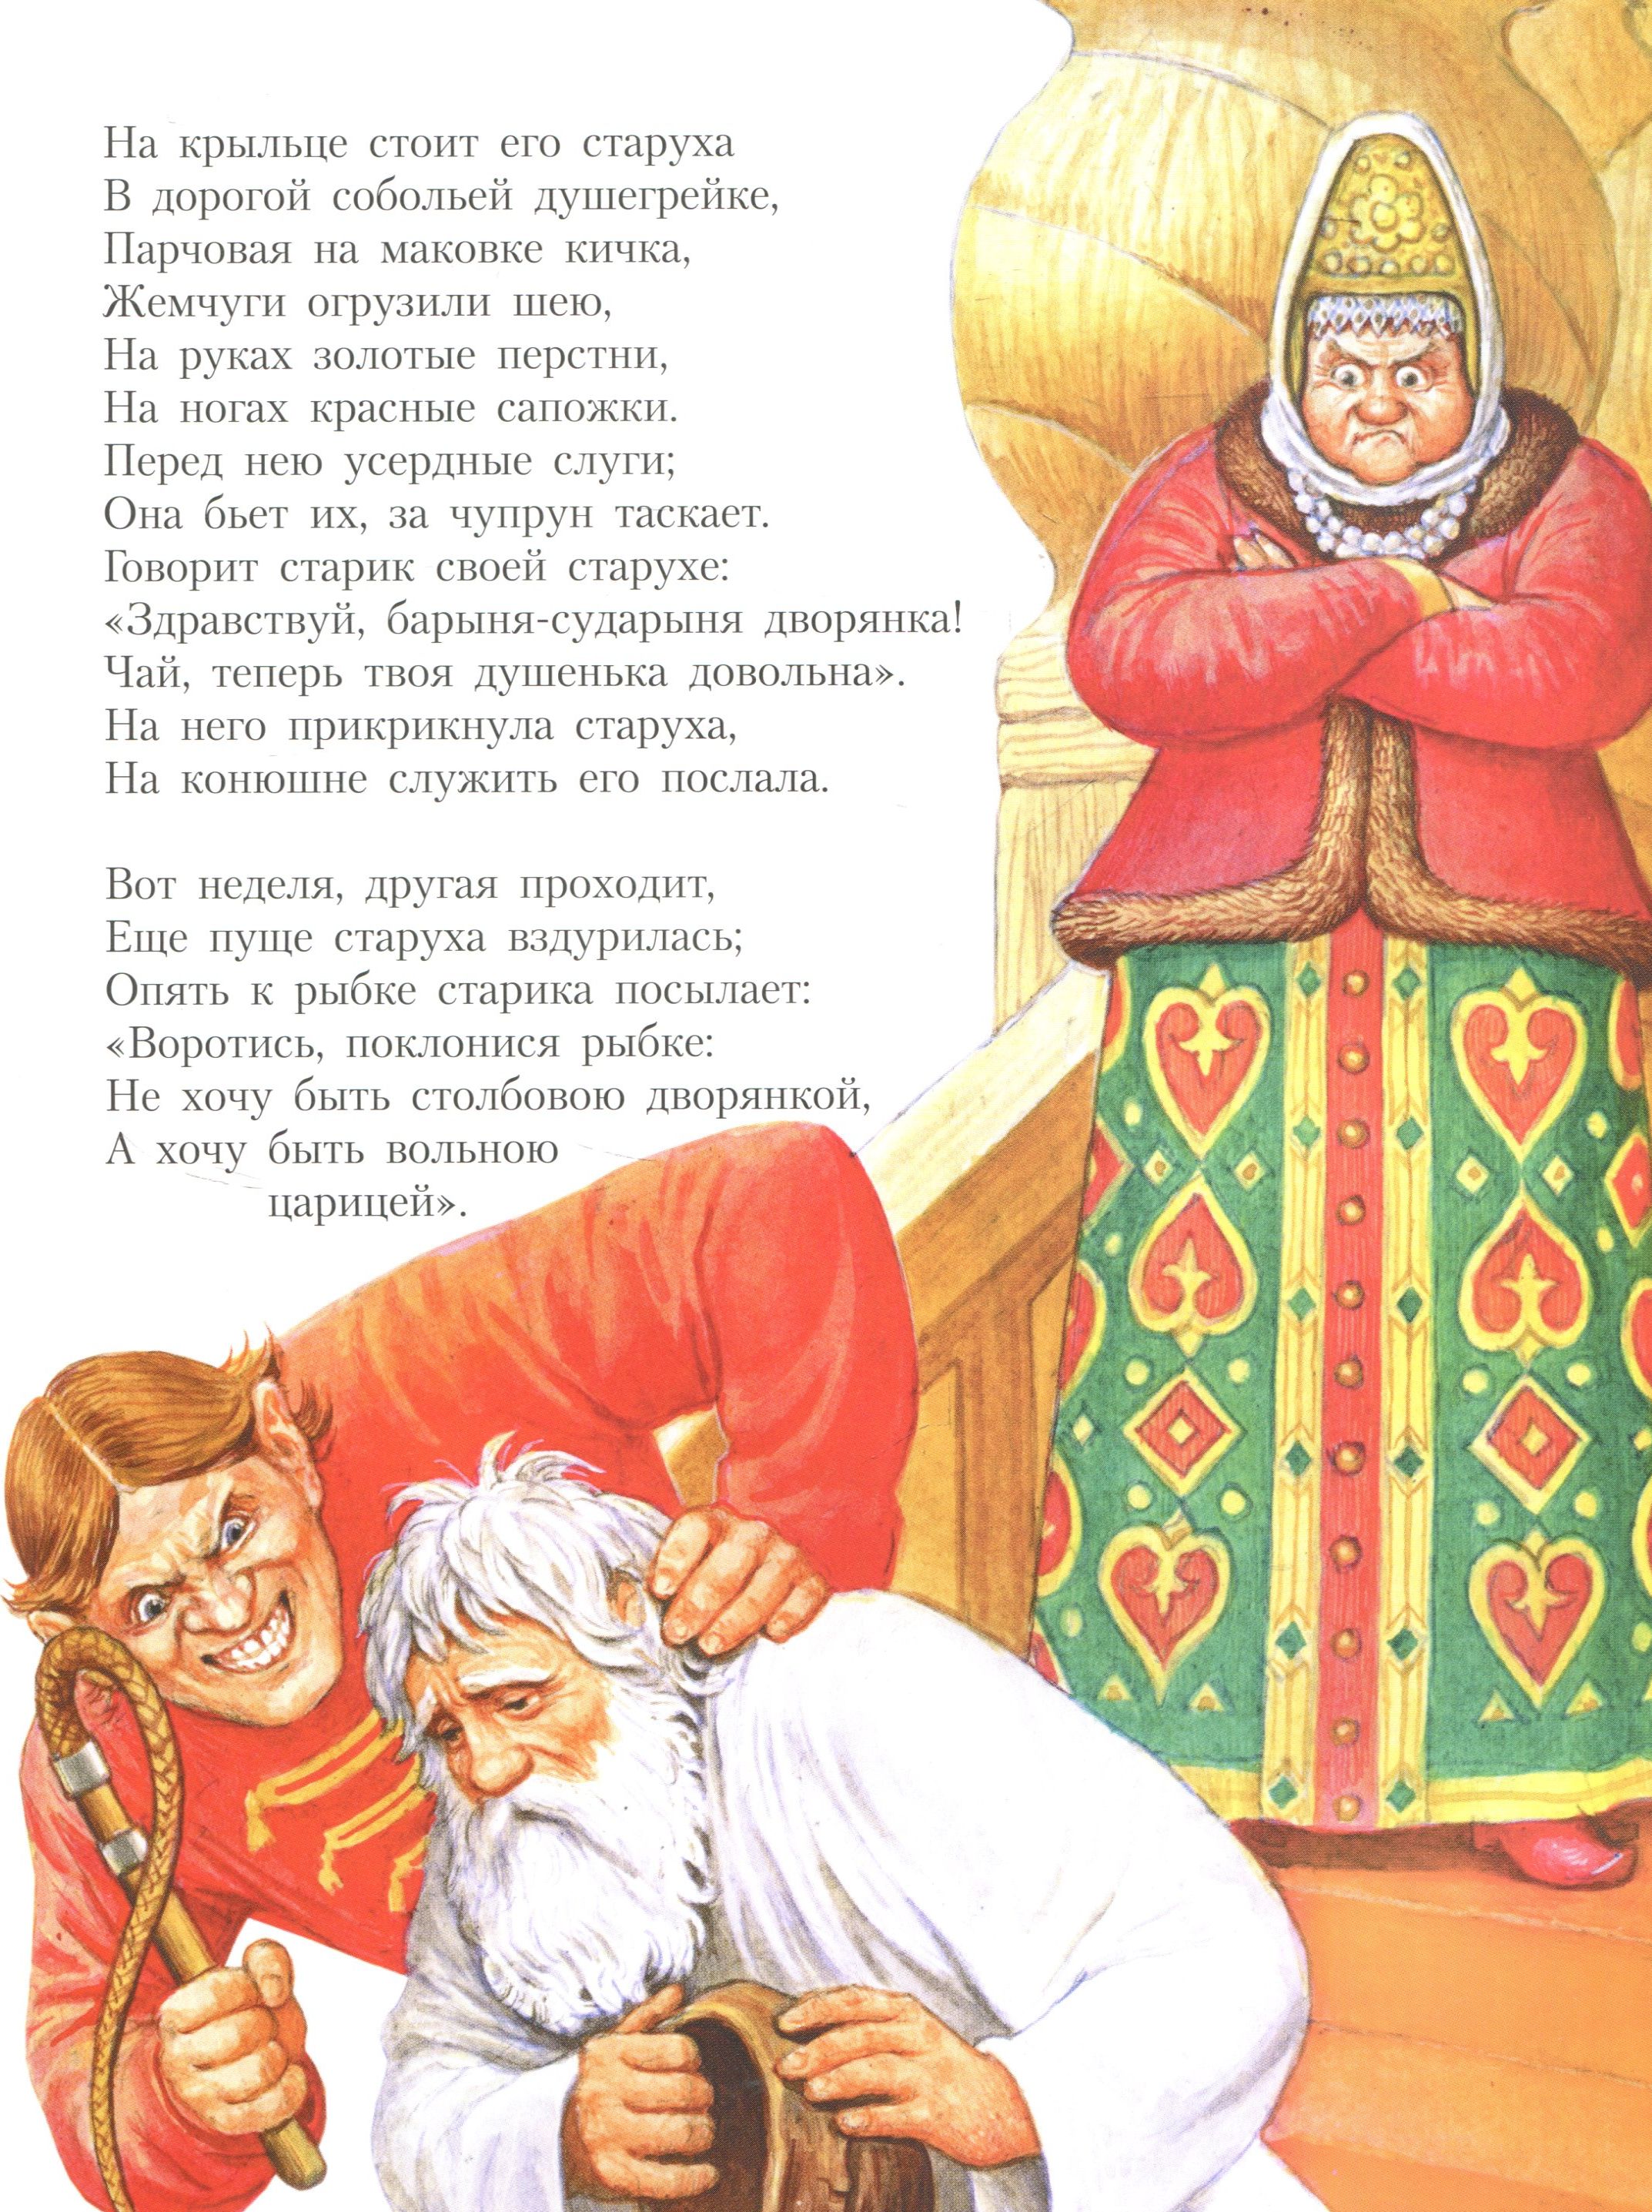 столбовая дворянка фото из сказки пушкина